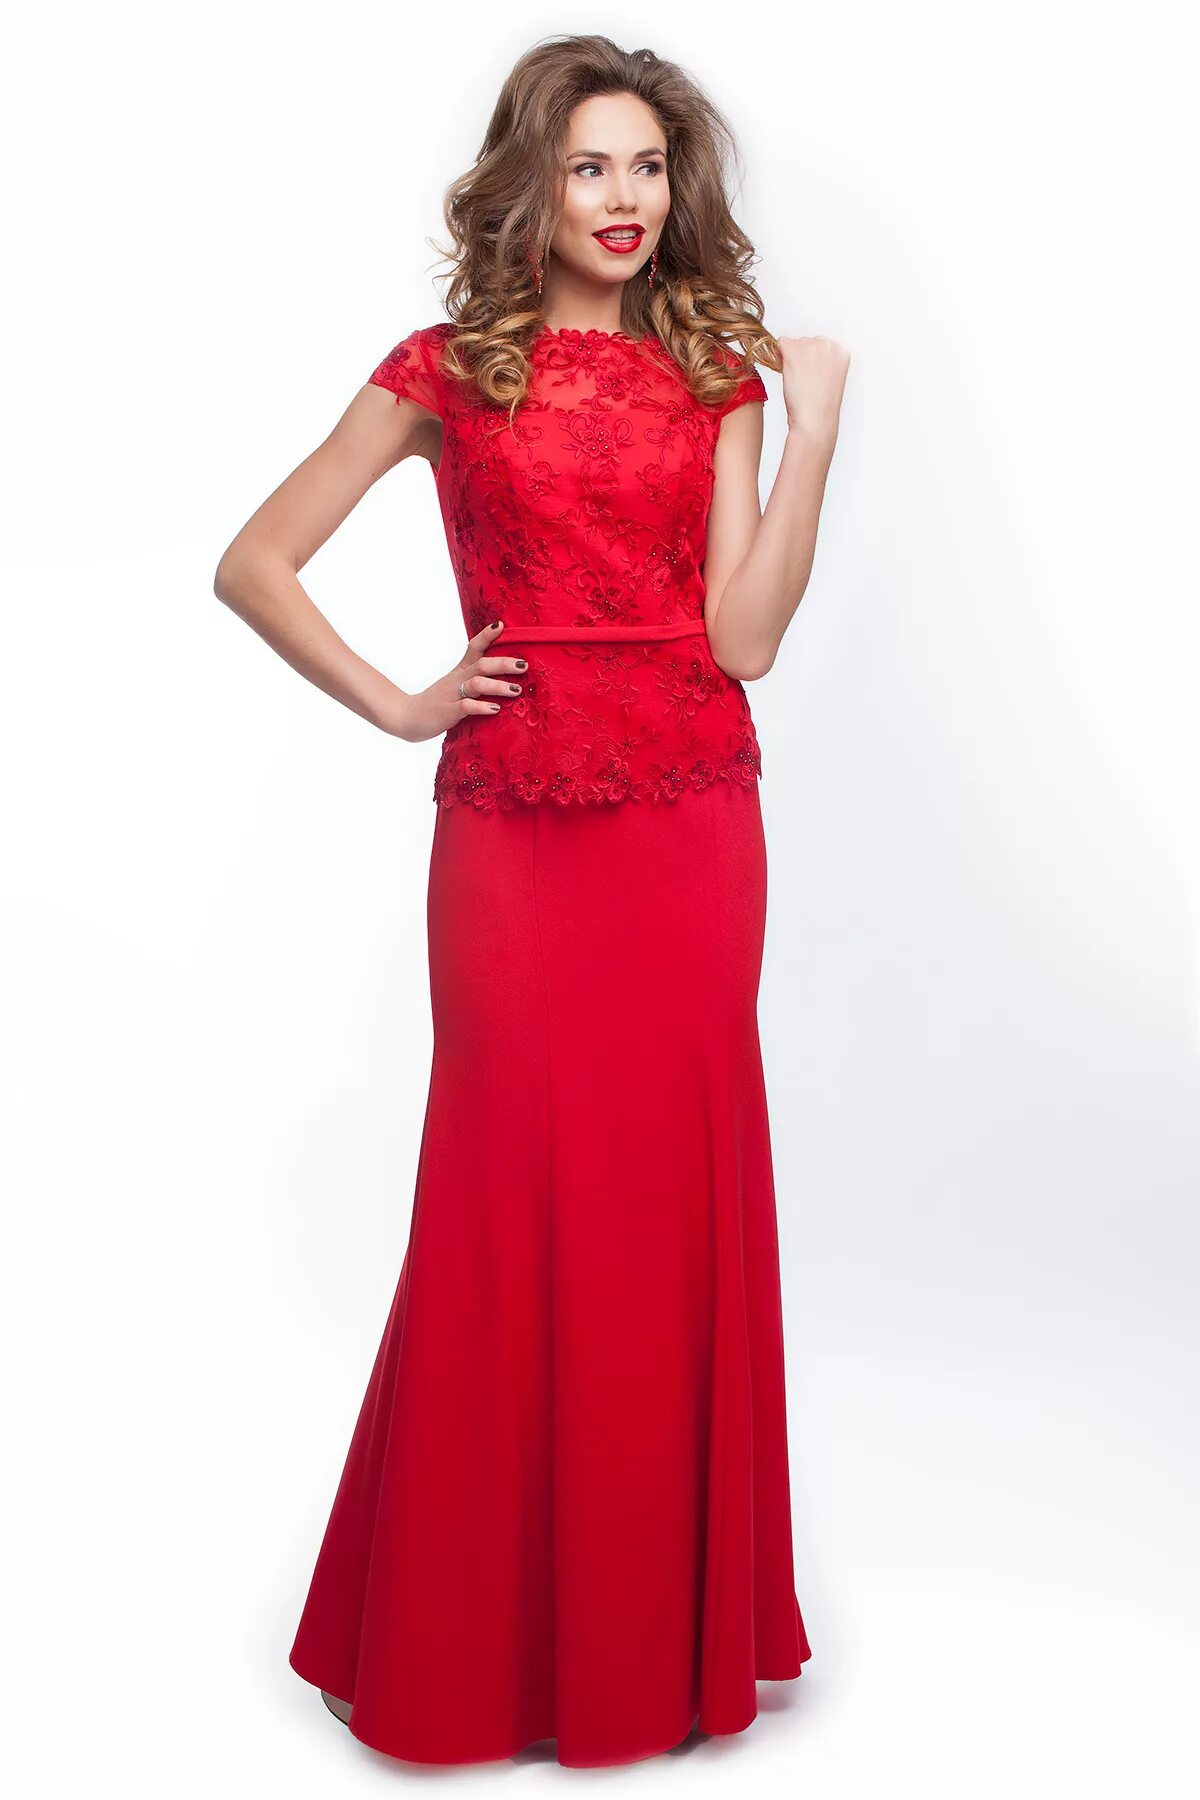 Вечернее платье. Красное платье. Красивое красное платье. Красивые вечерние платья. Прокат платье недорого